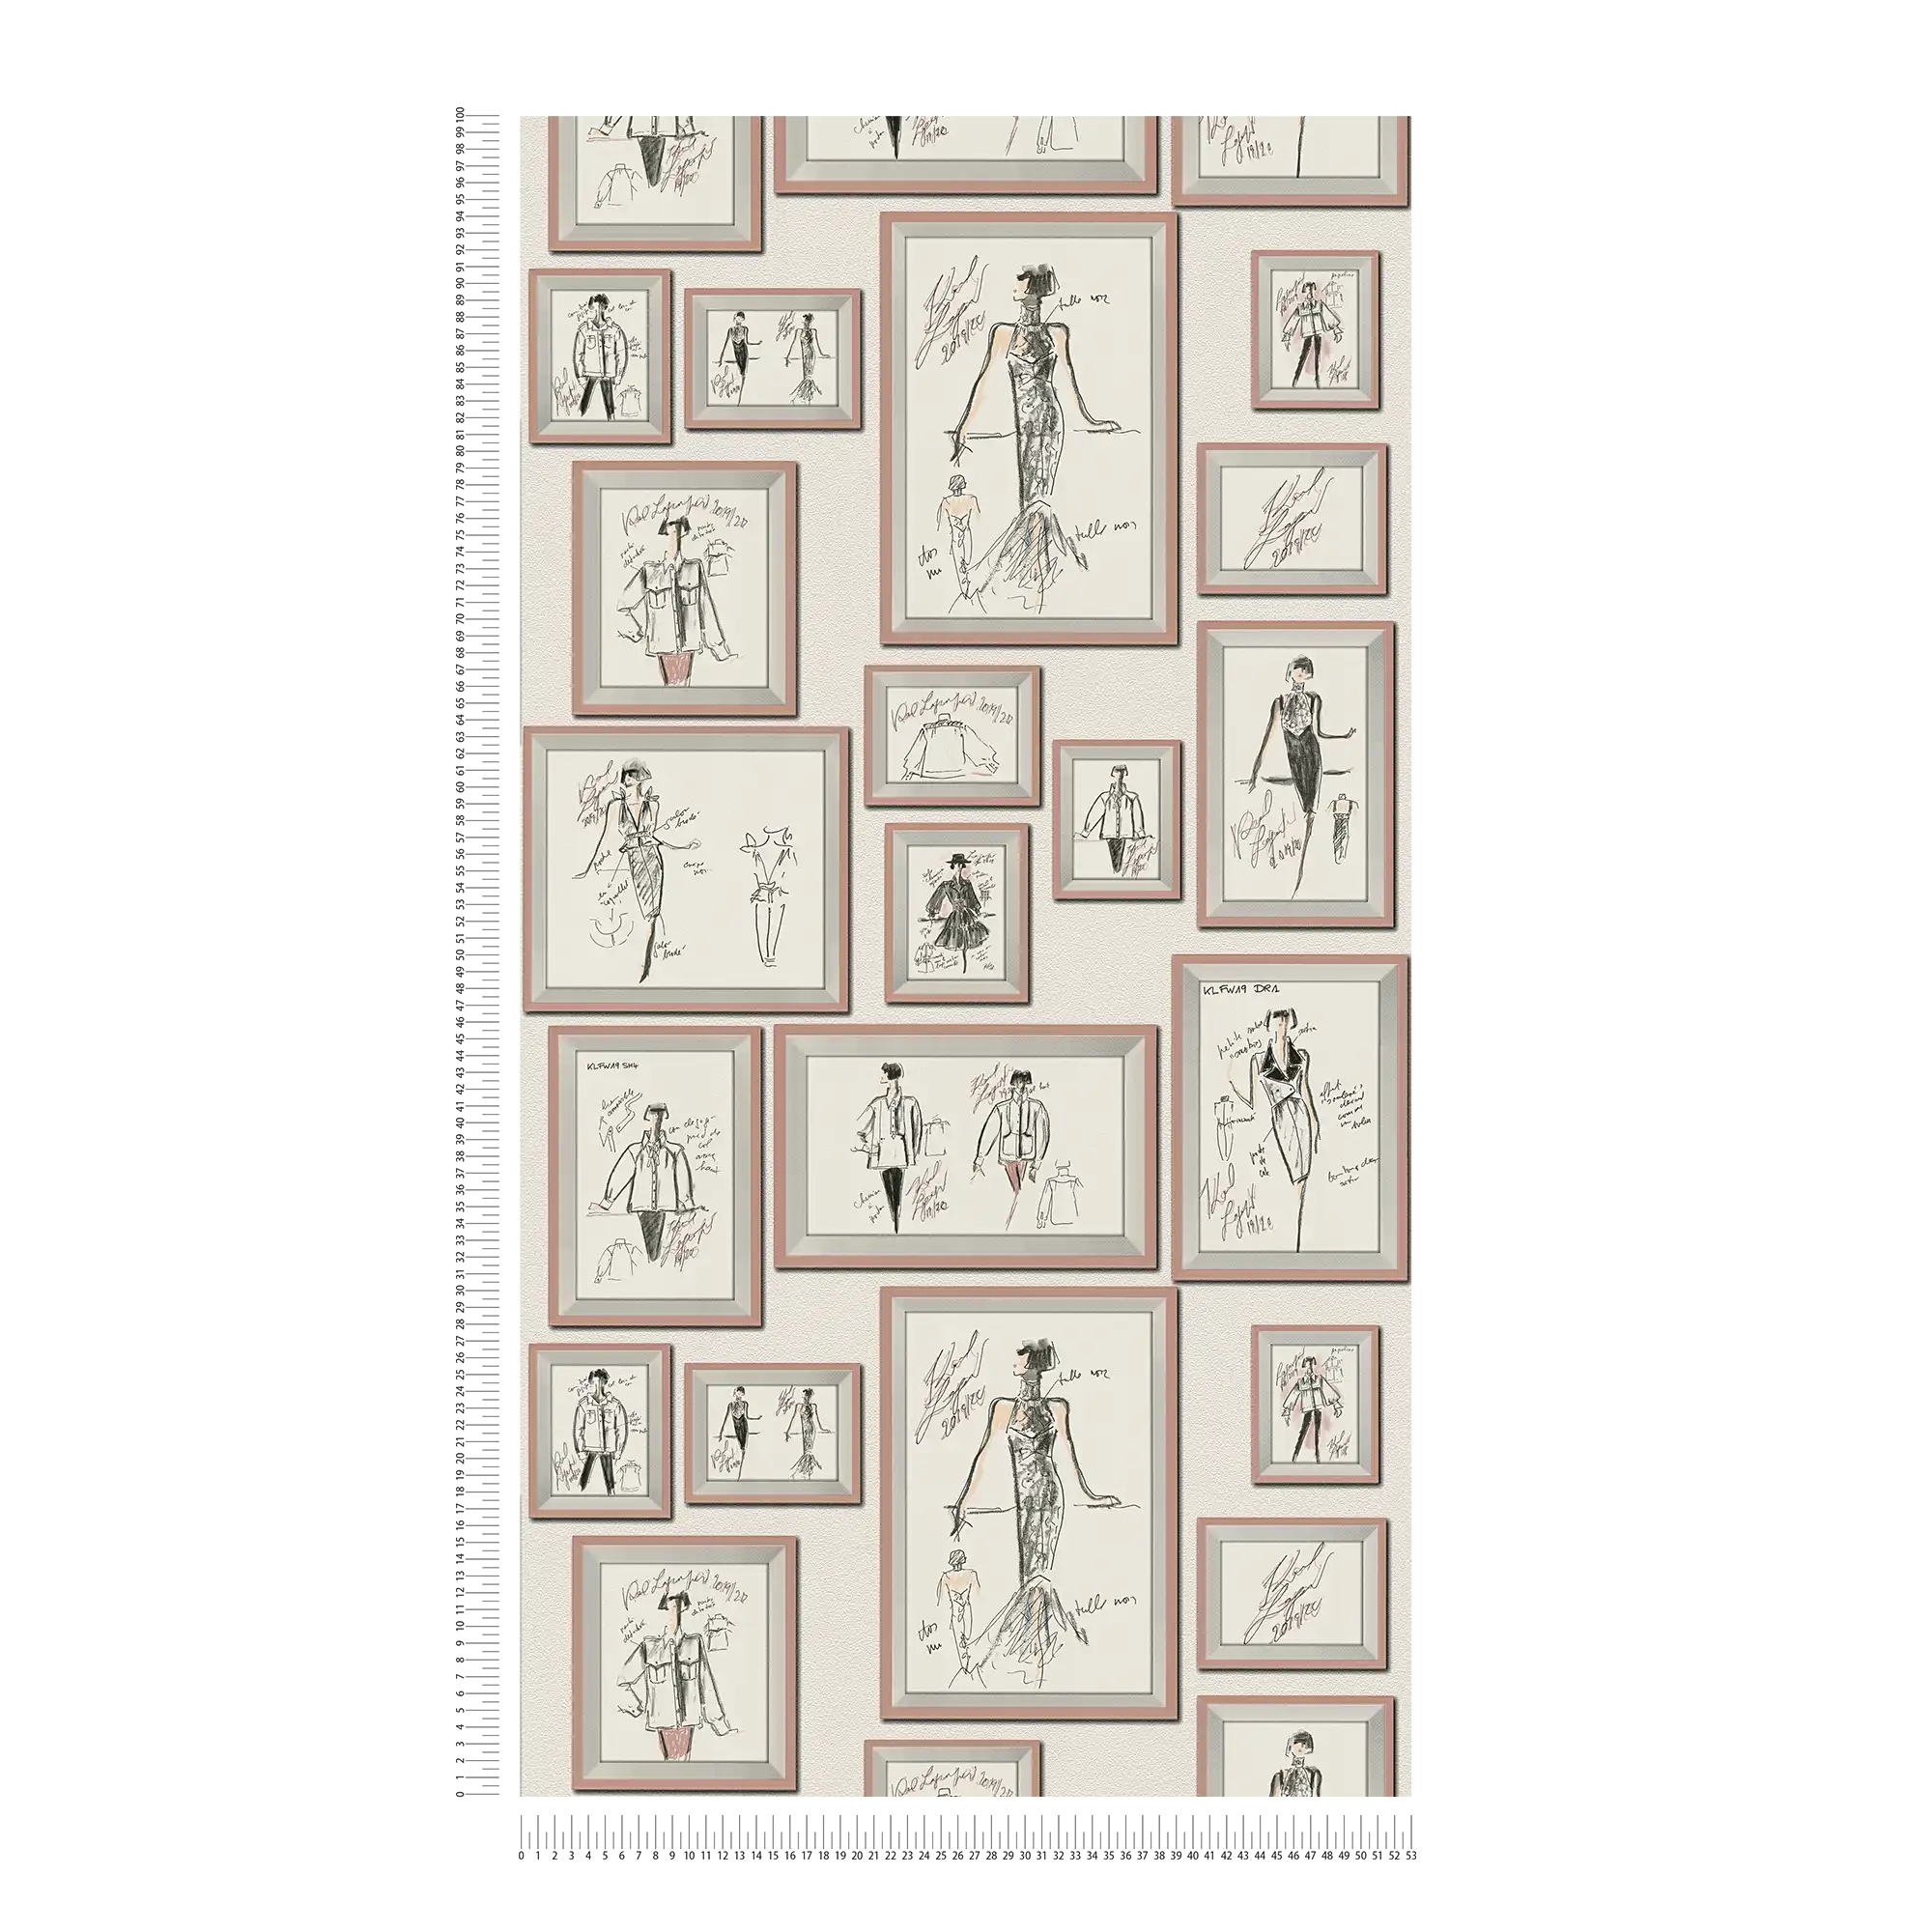             Non-woven wallpaper Karl LAGERFELD fashion designs - white, pink
        